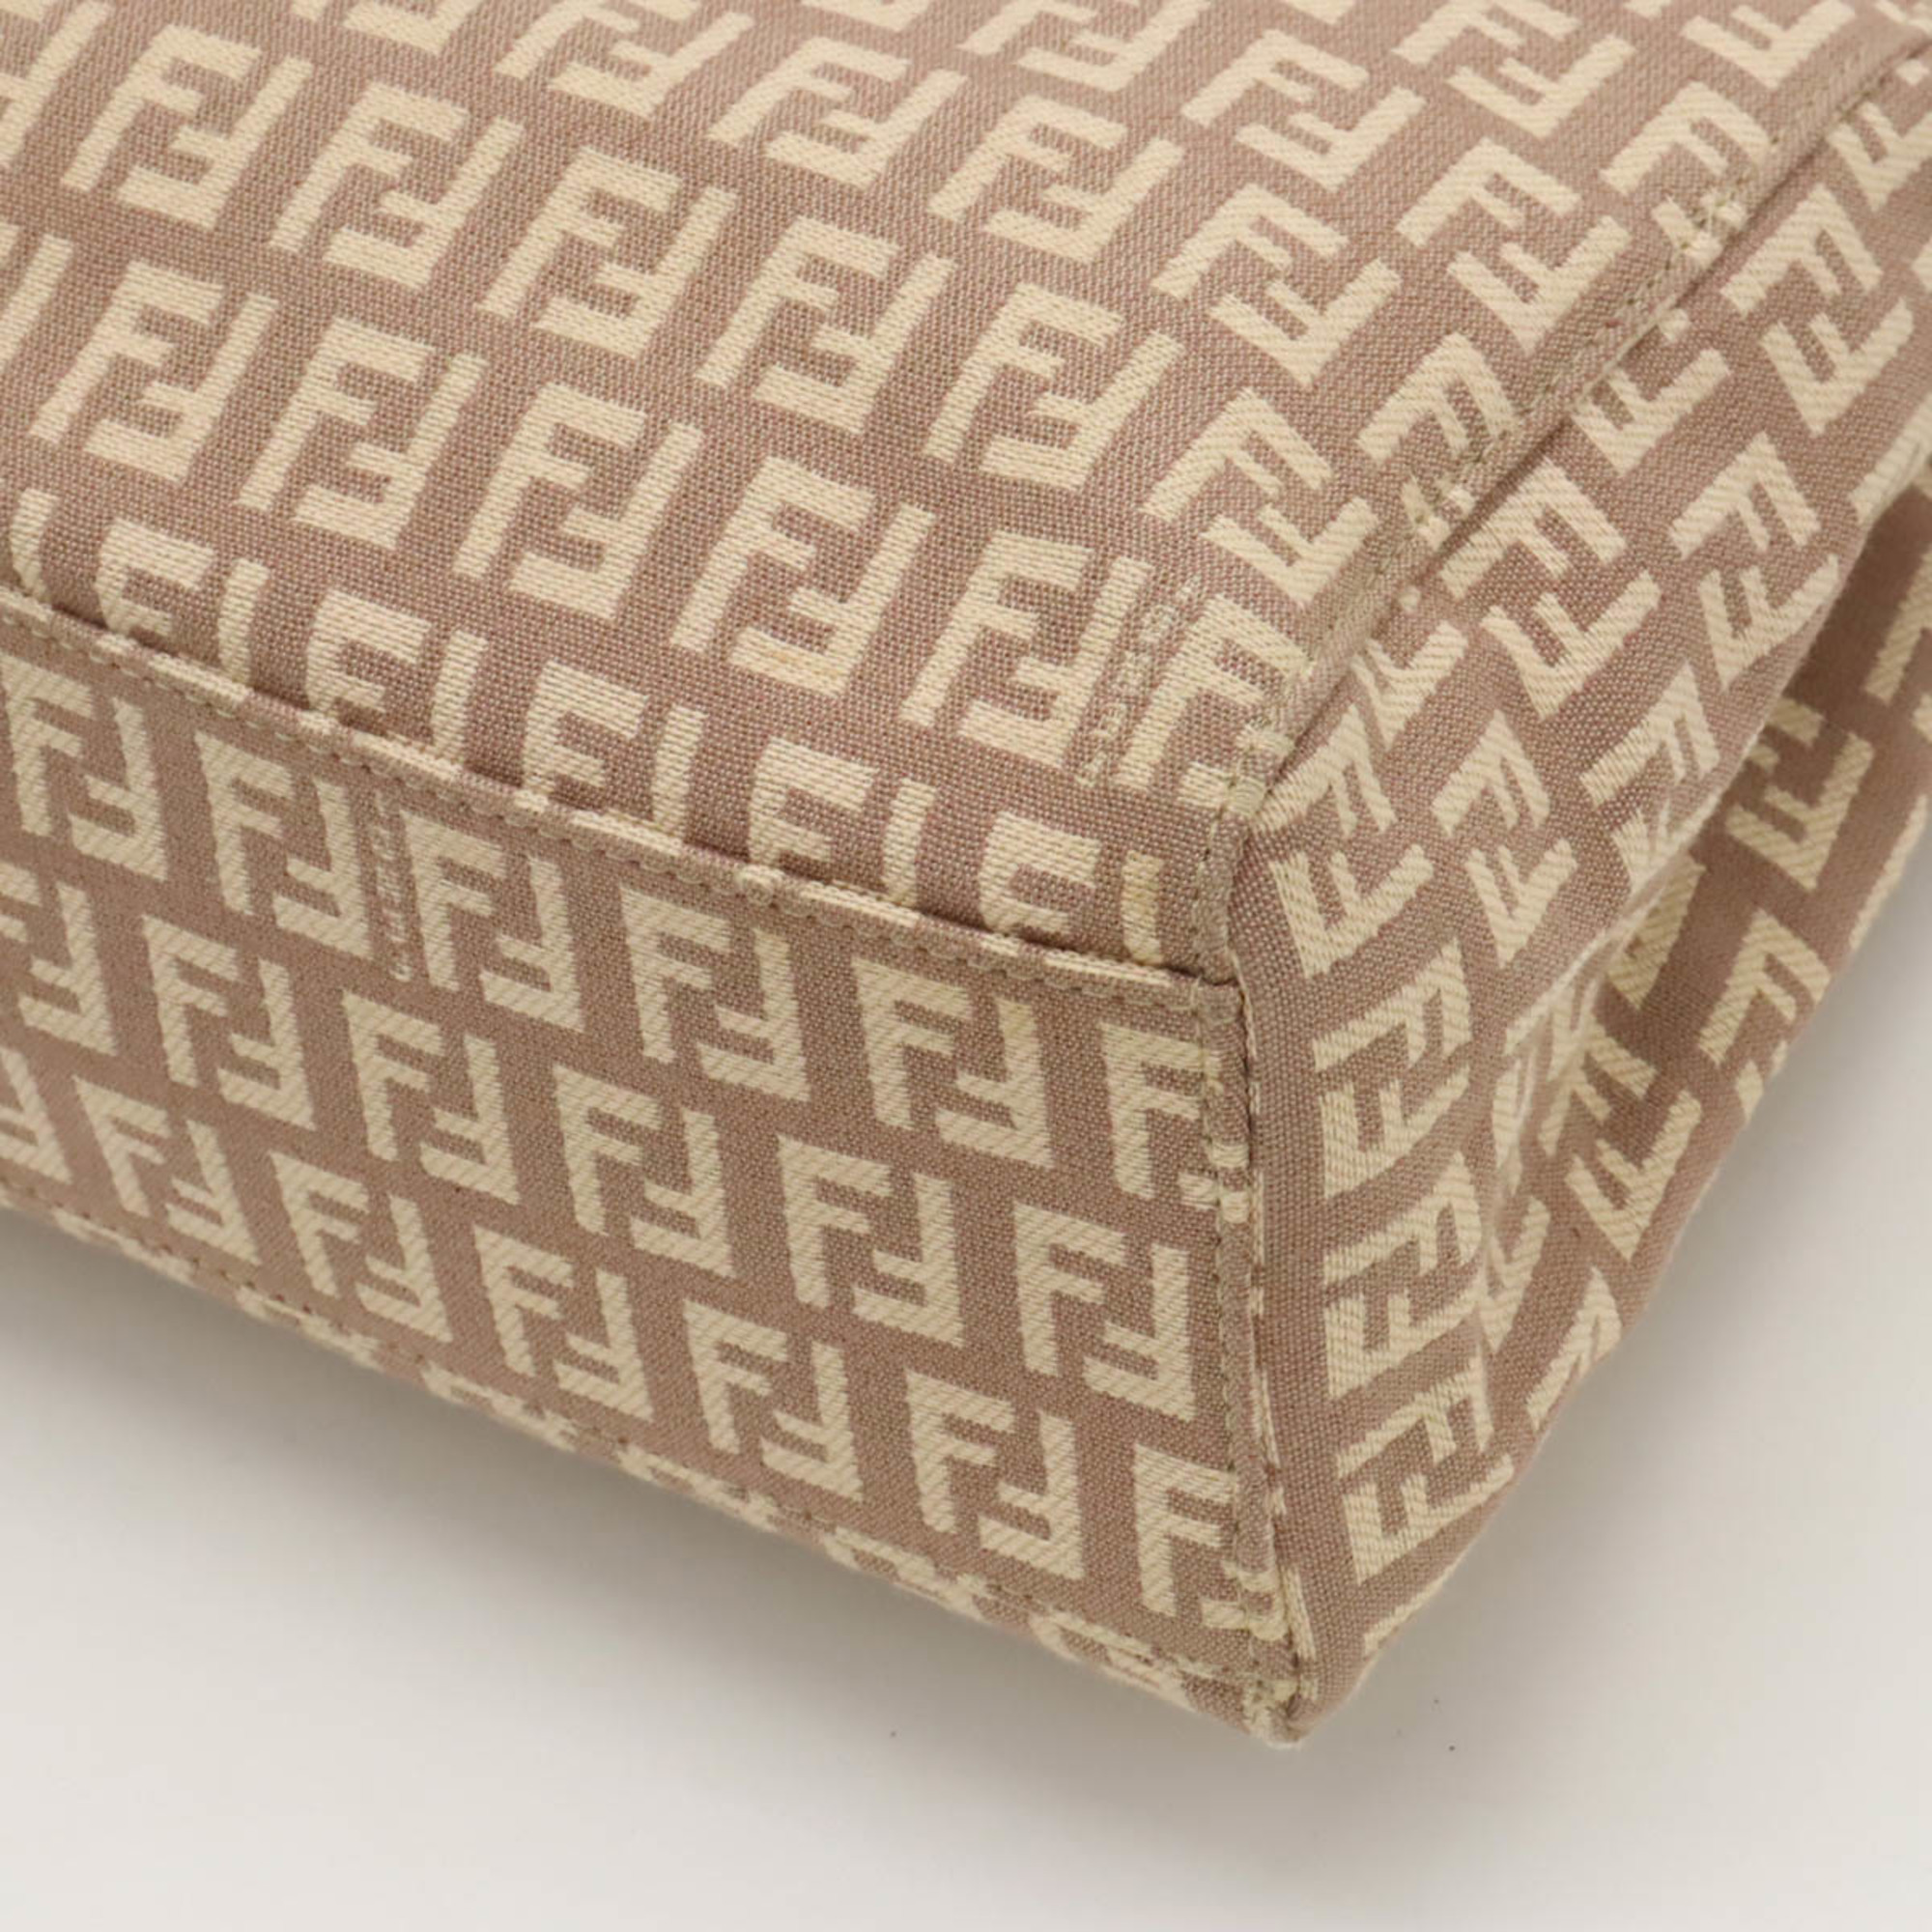 FENDI Zucchino Zucca pattern tote bag handbag canvas leather pink beige 8BH133